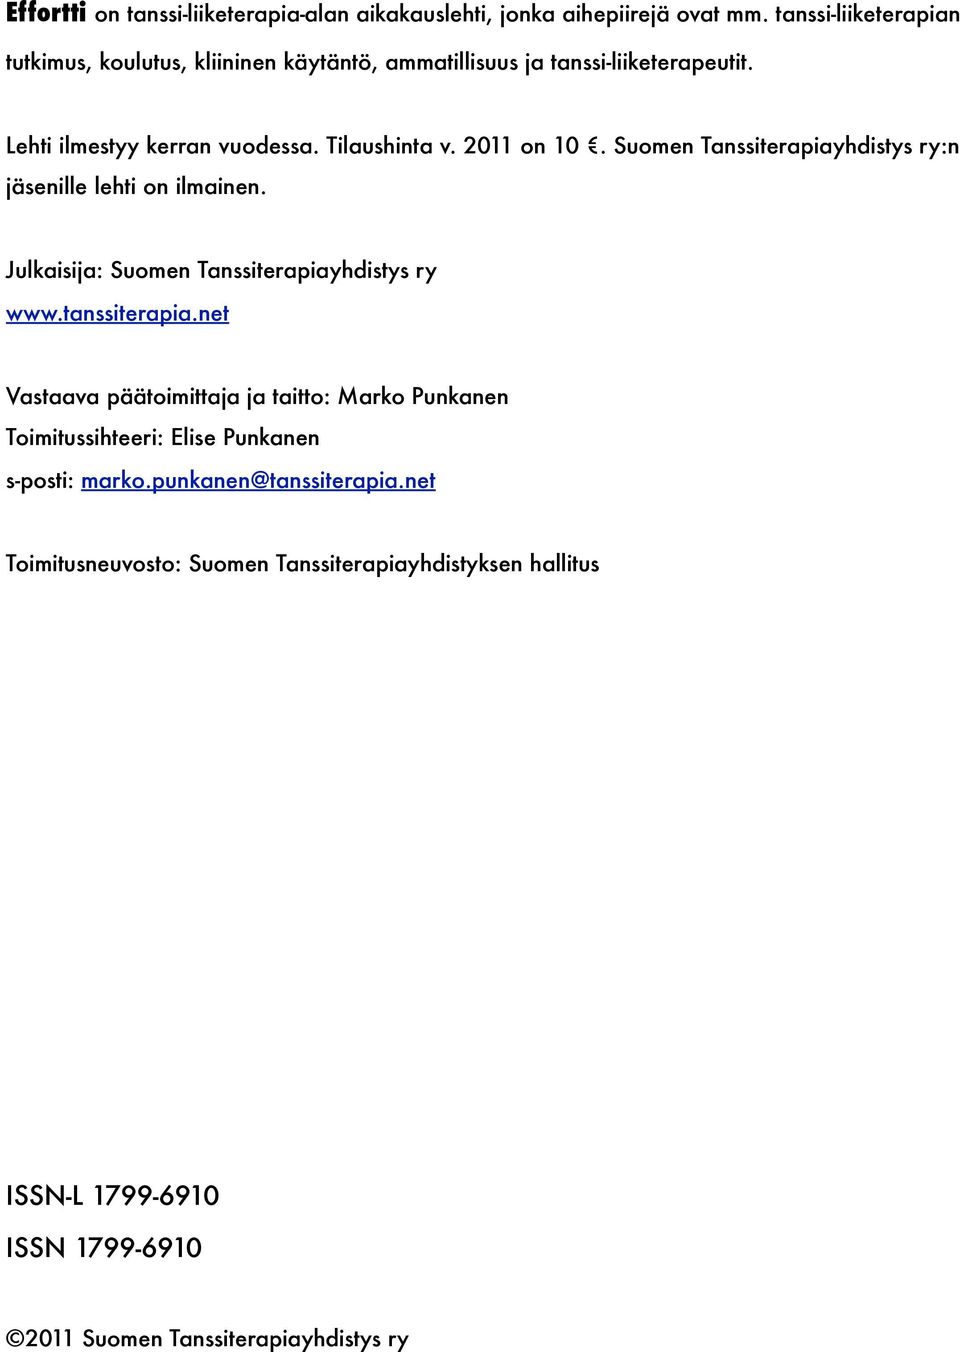 2011 on 10. Suomen Tanssiterapiayhdistys ry:n jäsenille lehti on ilmainen. Julkaisija: Suomen Tanssiterapiayhdistys ry www.tanssiterapia.